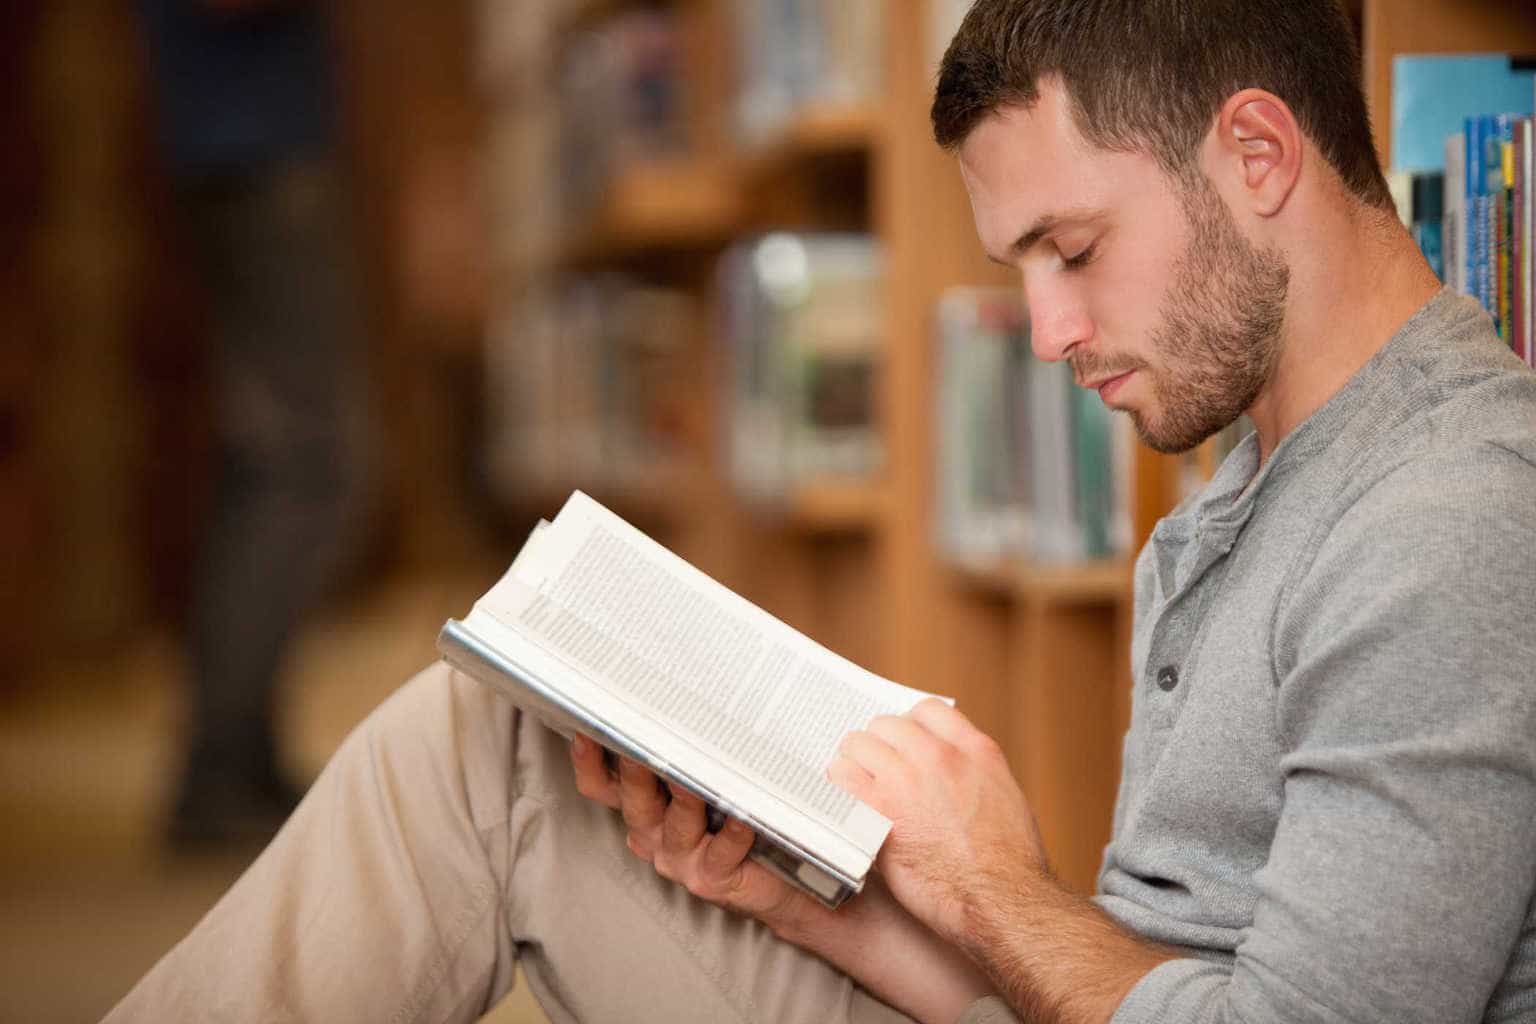 الناس الذين يحبون قراءة الكتب يعيشون حياة أكثر سعادة